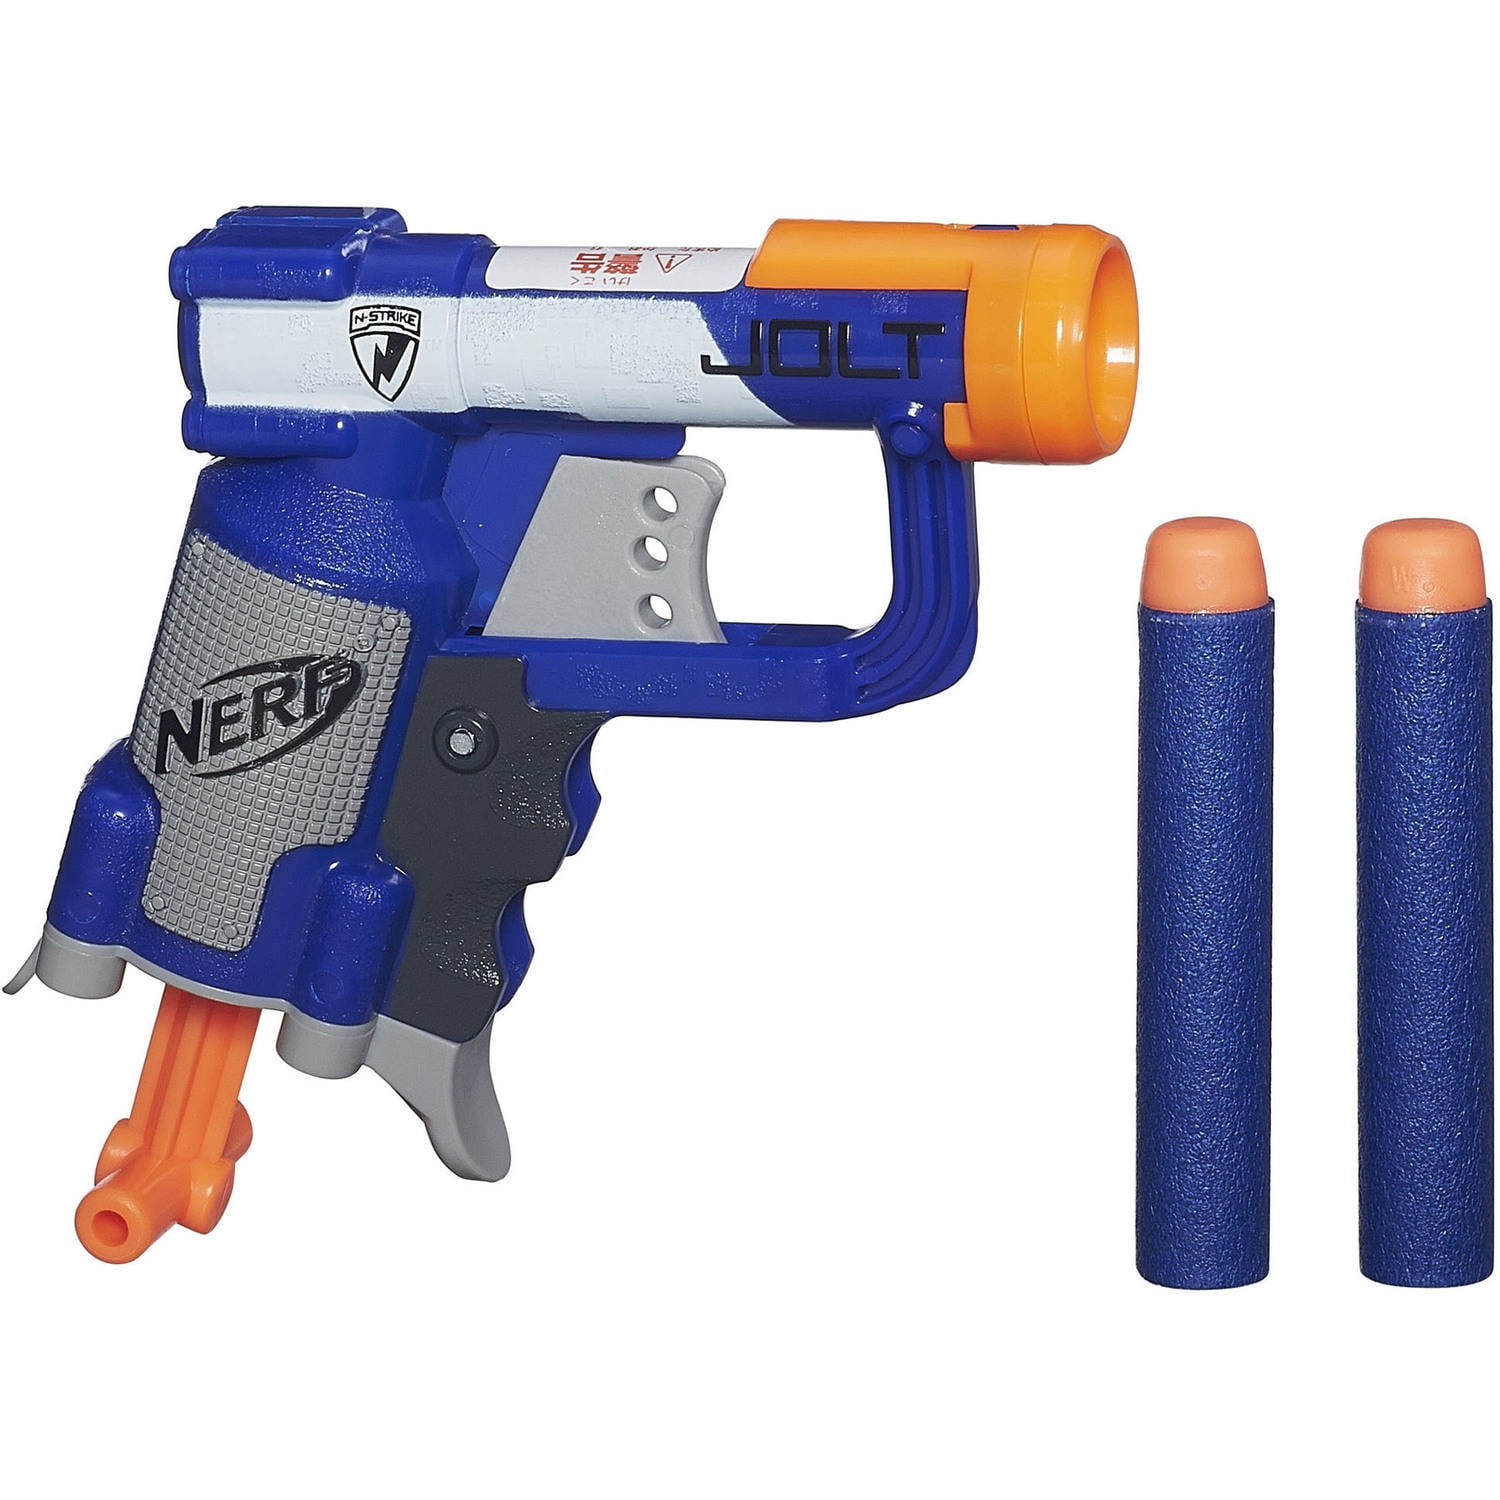 NERF N-Force Firestrike Elite Single Shot Foam Dart Pistol Blaster